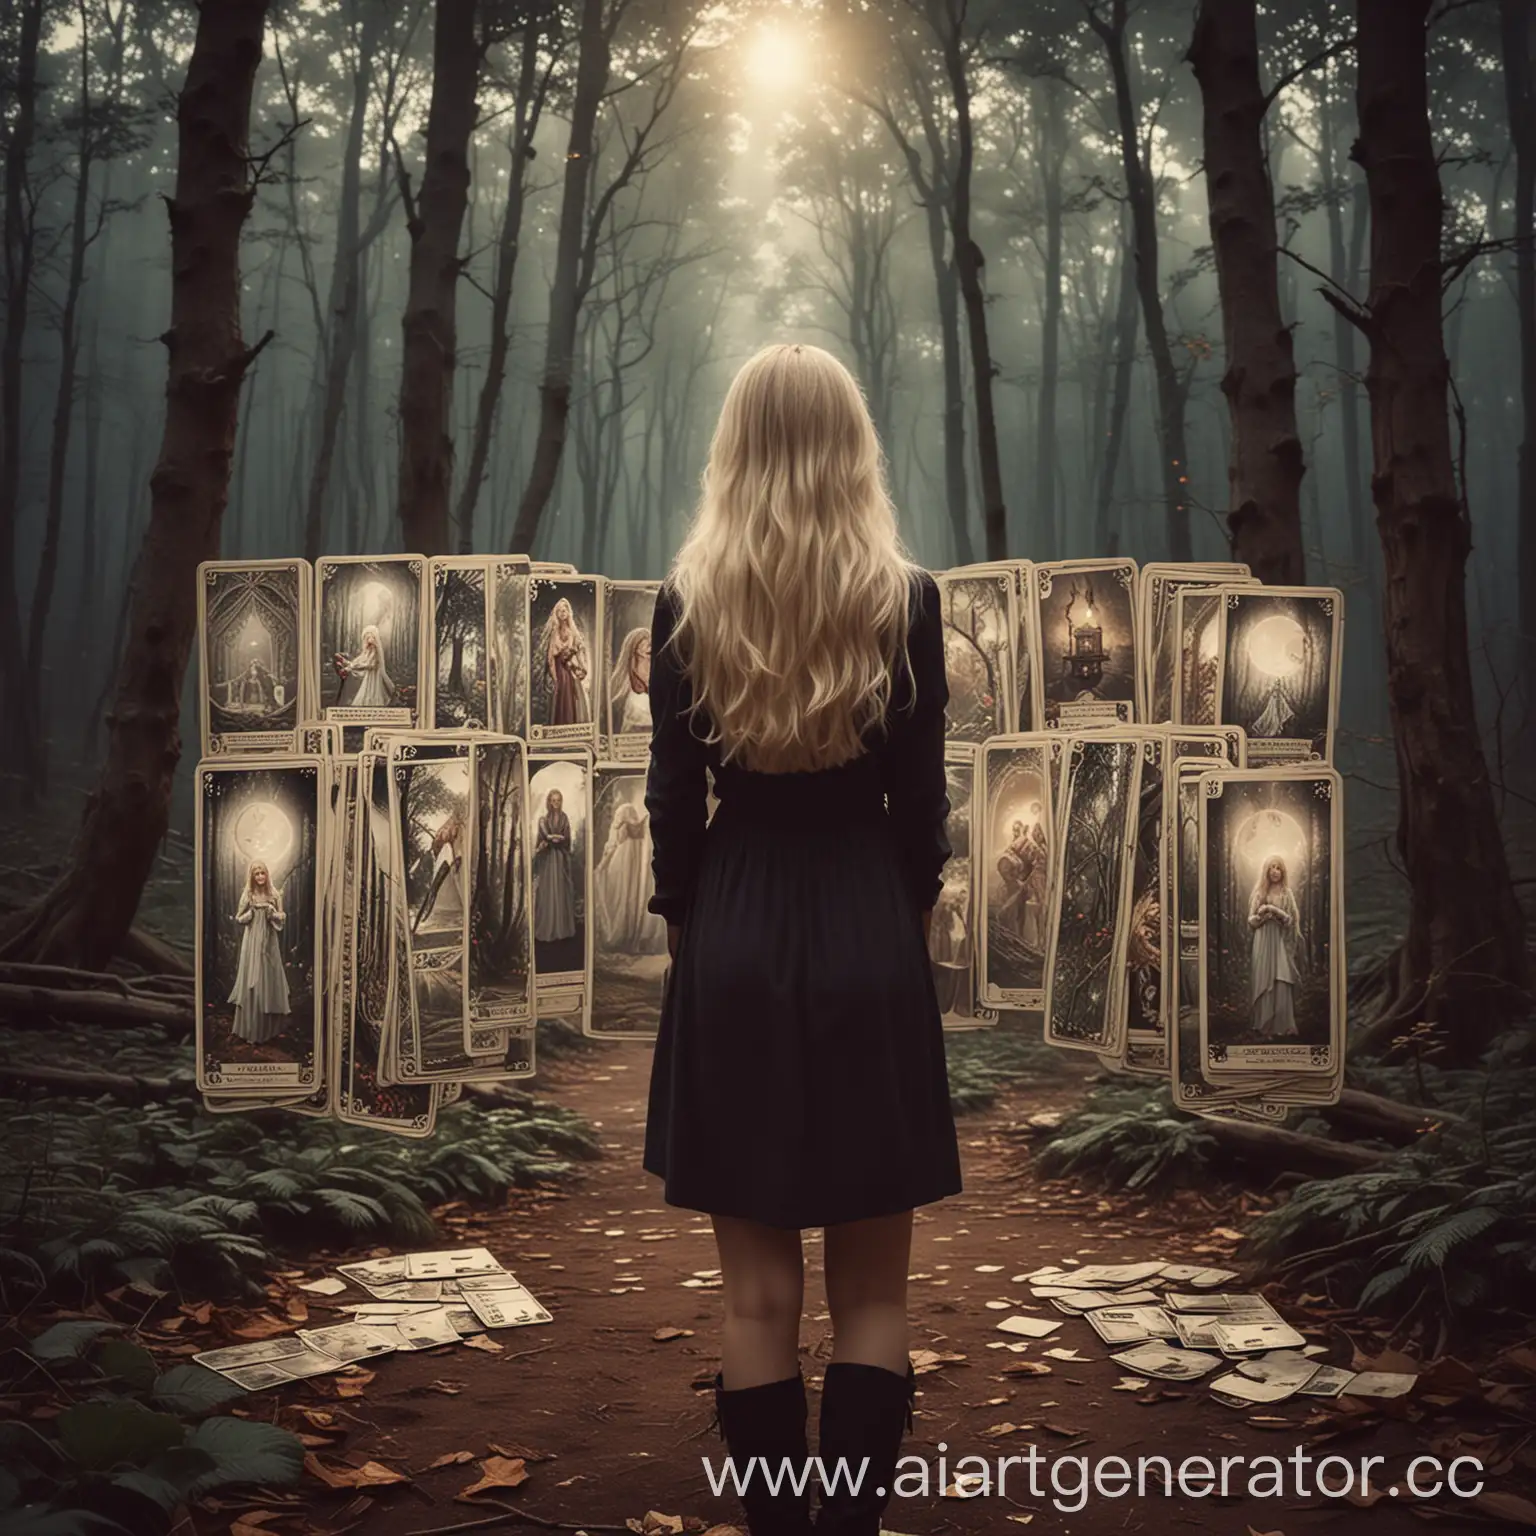 аватарка для инстаграмма, загадочная атмосфера, лес, девушка стоит спиной, у нее светлые волосы средней длины. видно что она гадала на картах таро